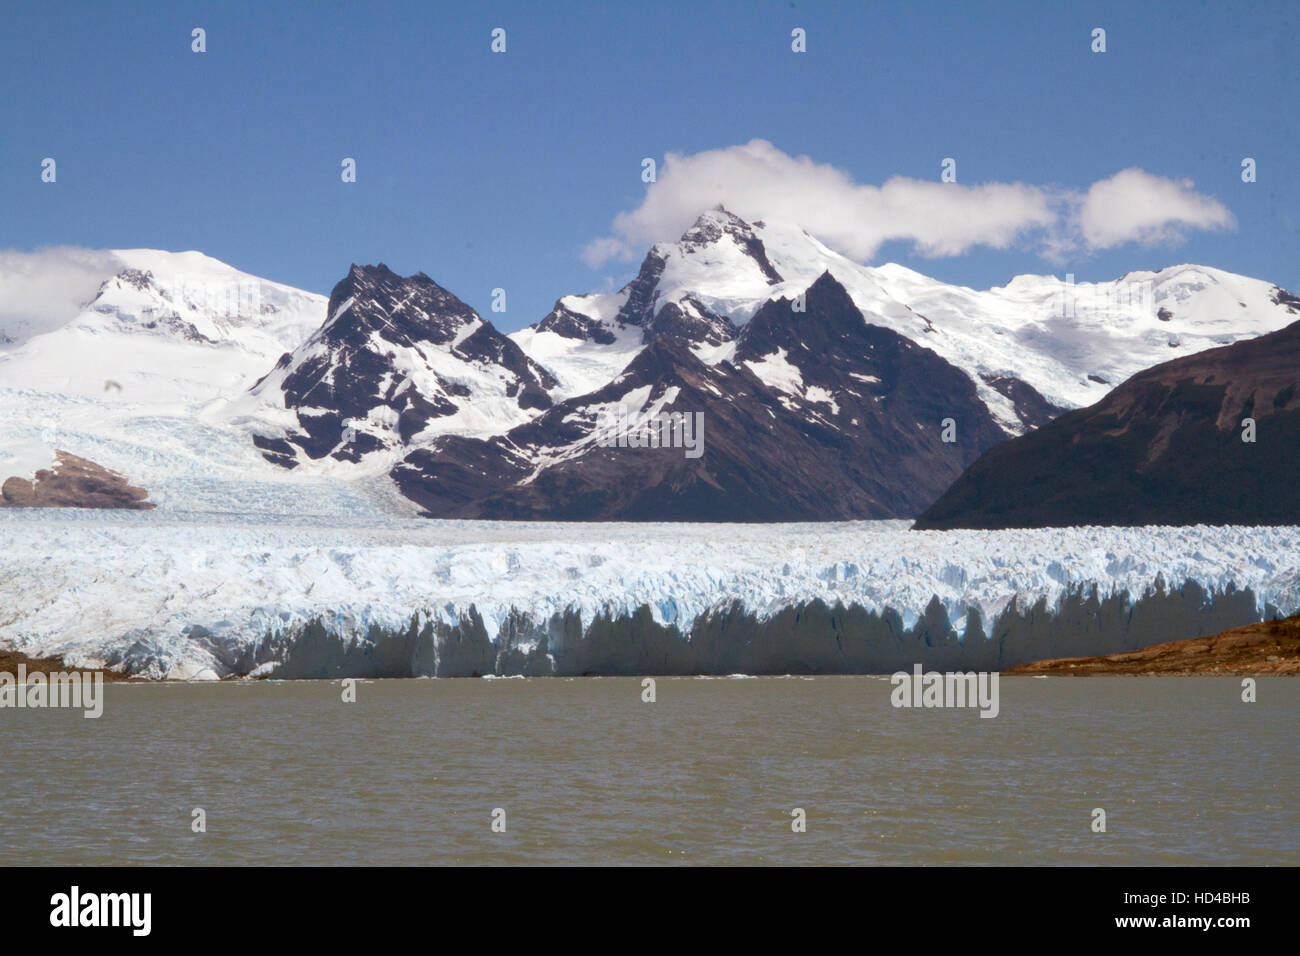 EL CALAFATE, ARG, 06.12.2016: Argentinian Perito Moreno Glacier located in the Los Glaciares National Park in southwest Santa Cruz Province, Argentina Stock Photo